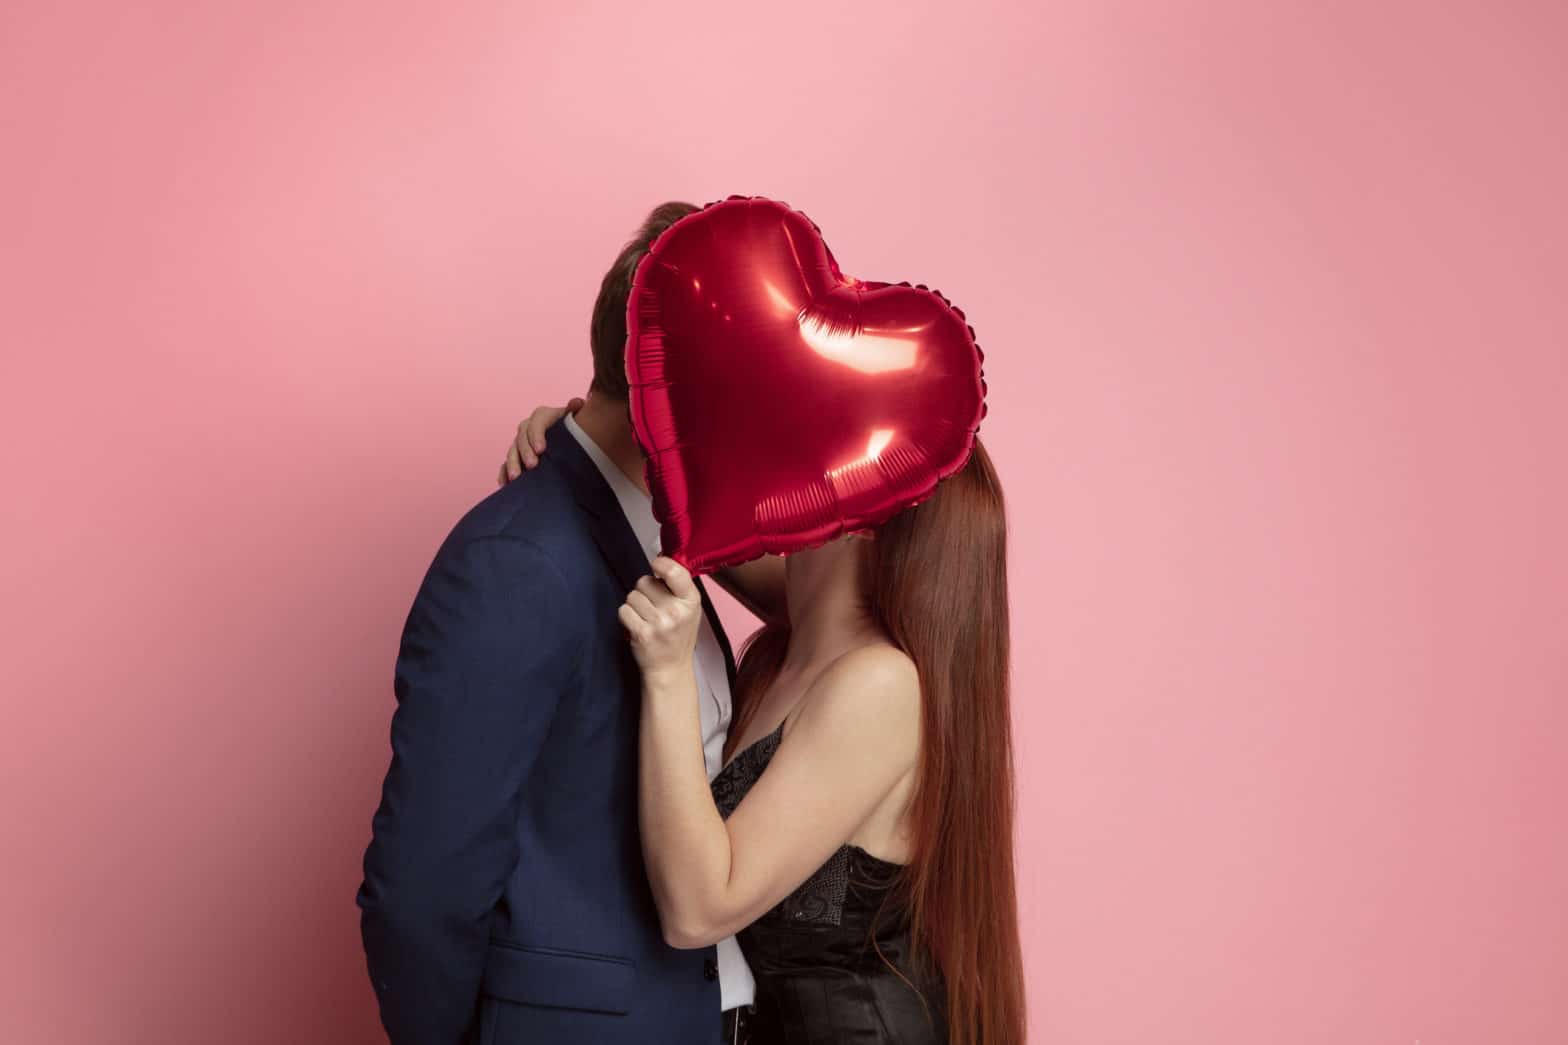 Saint Valentin, quelles idées de cadeau original pour les amoureux ?